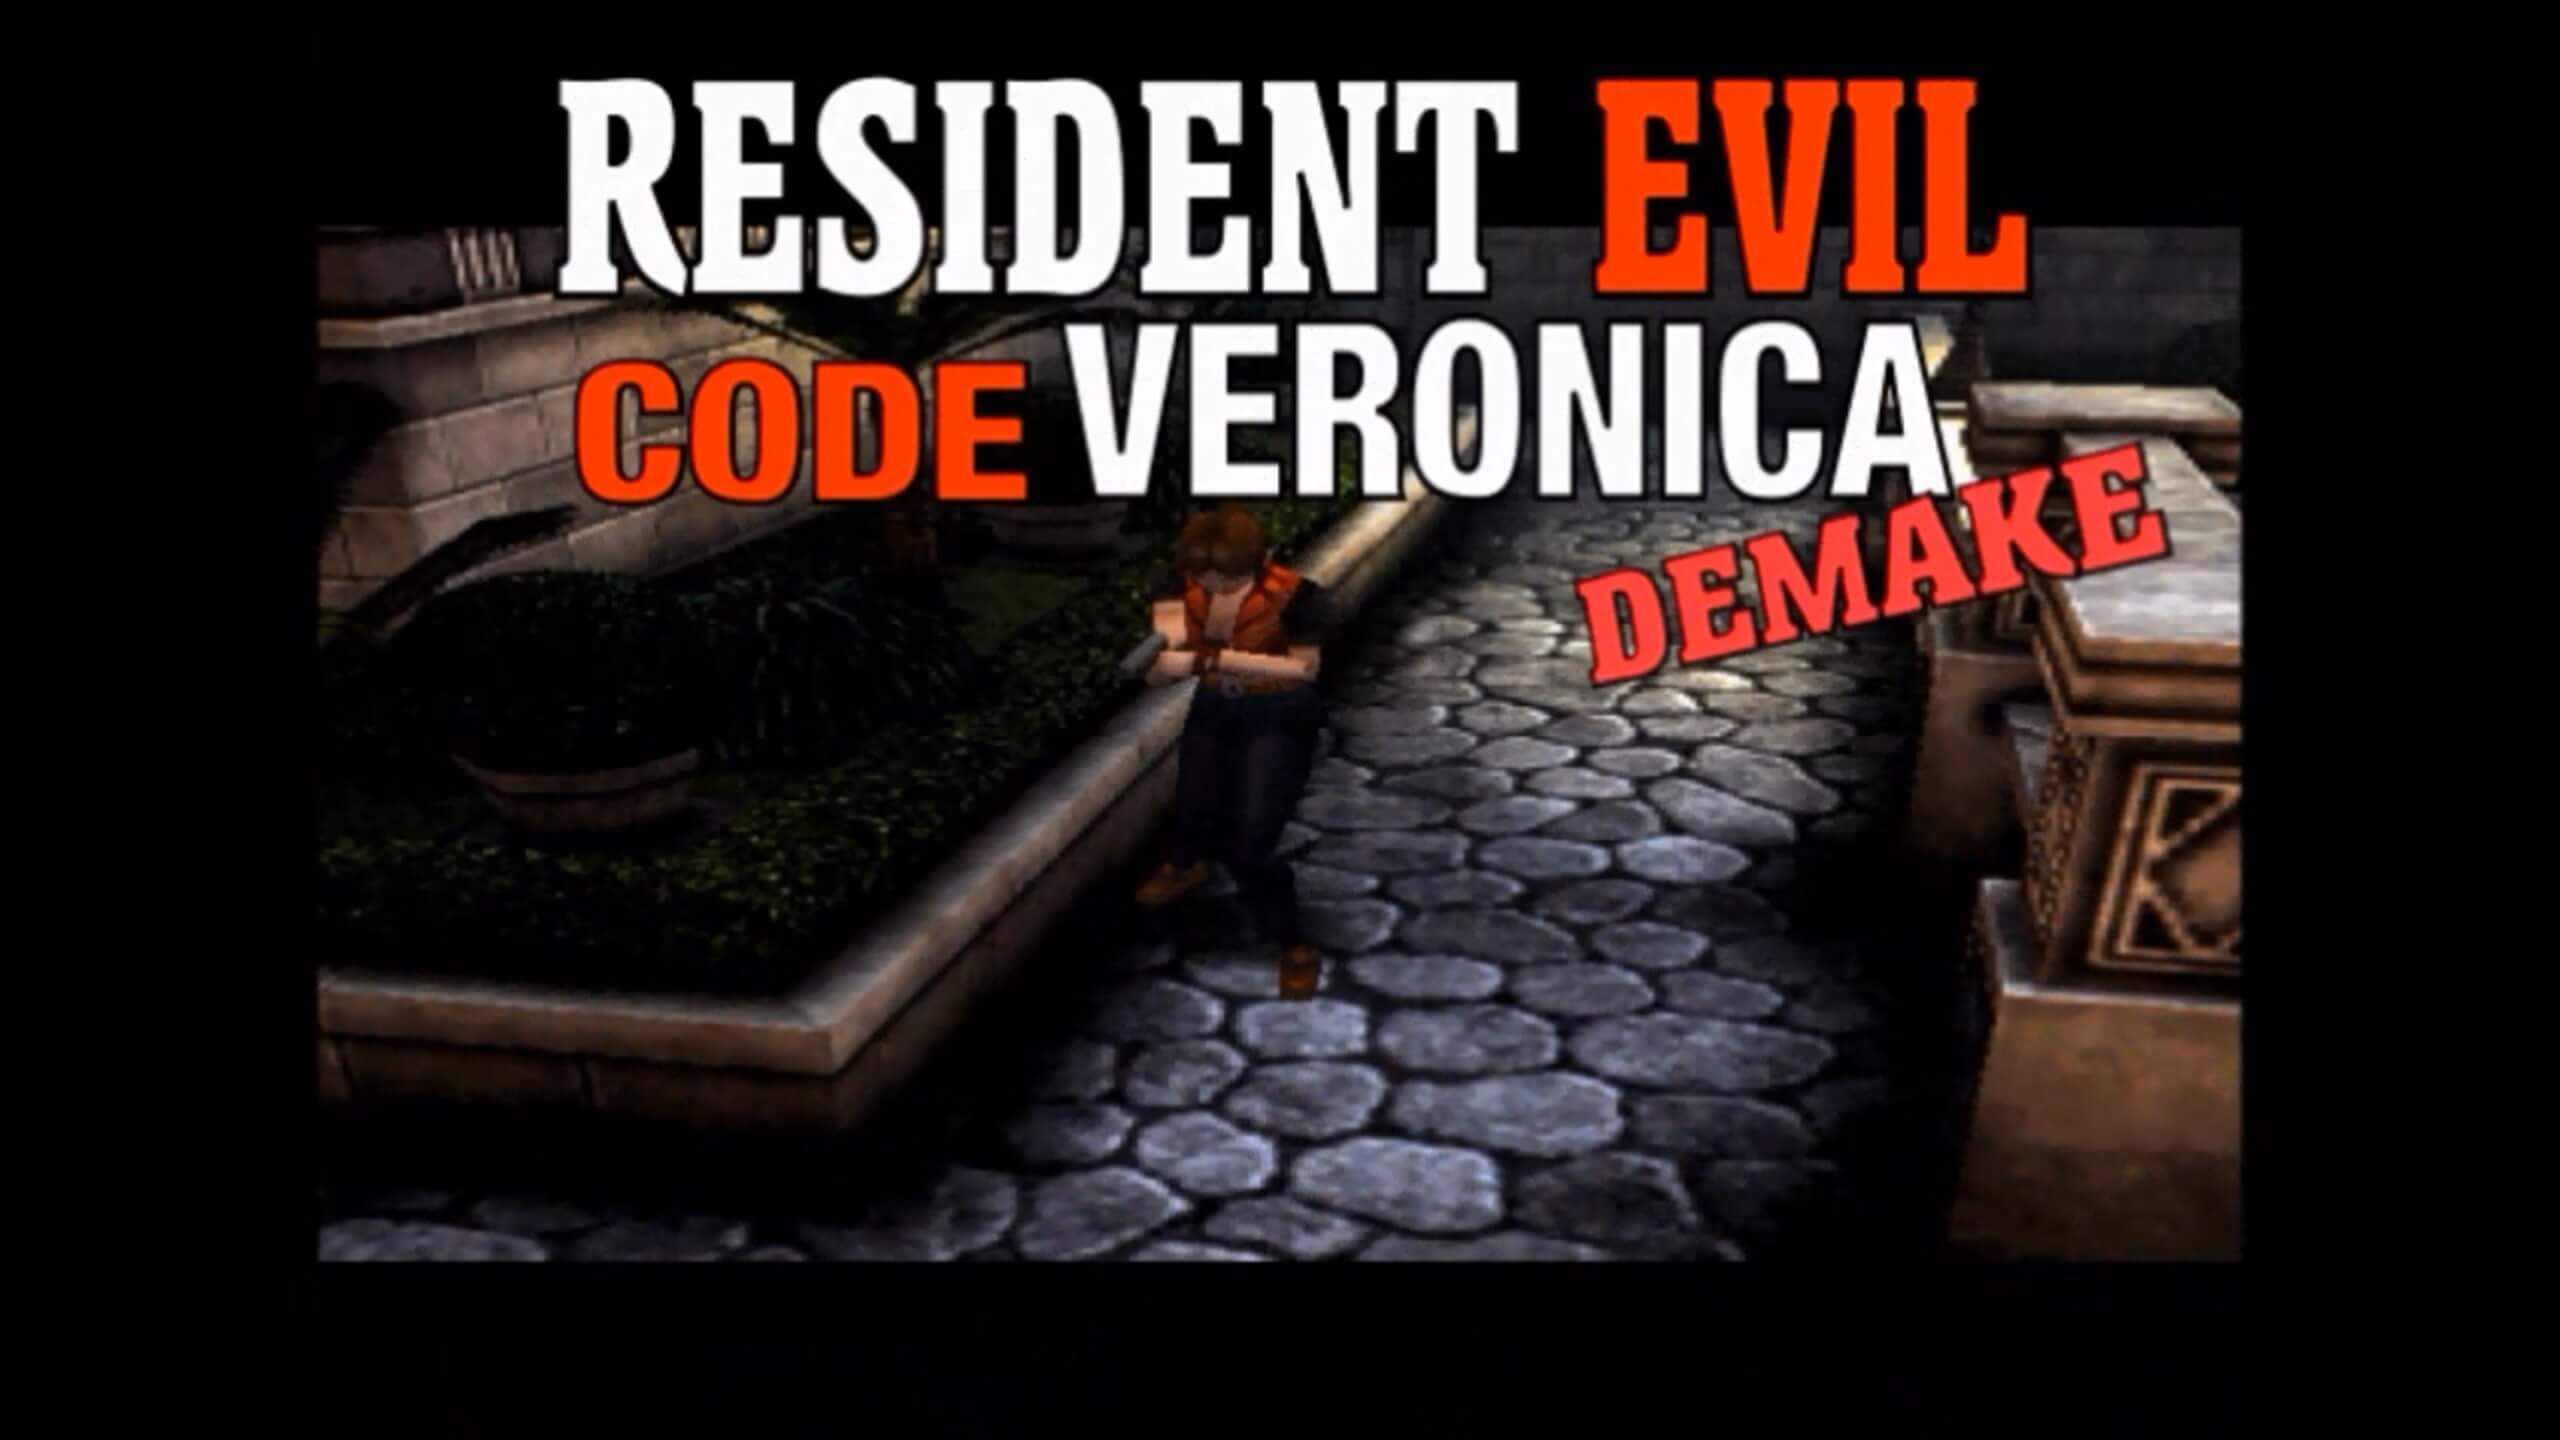 Resident Evil CODE:Veronica, Resident Evil